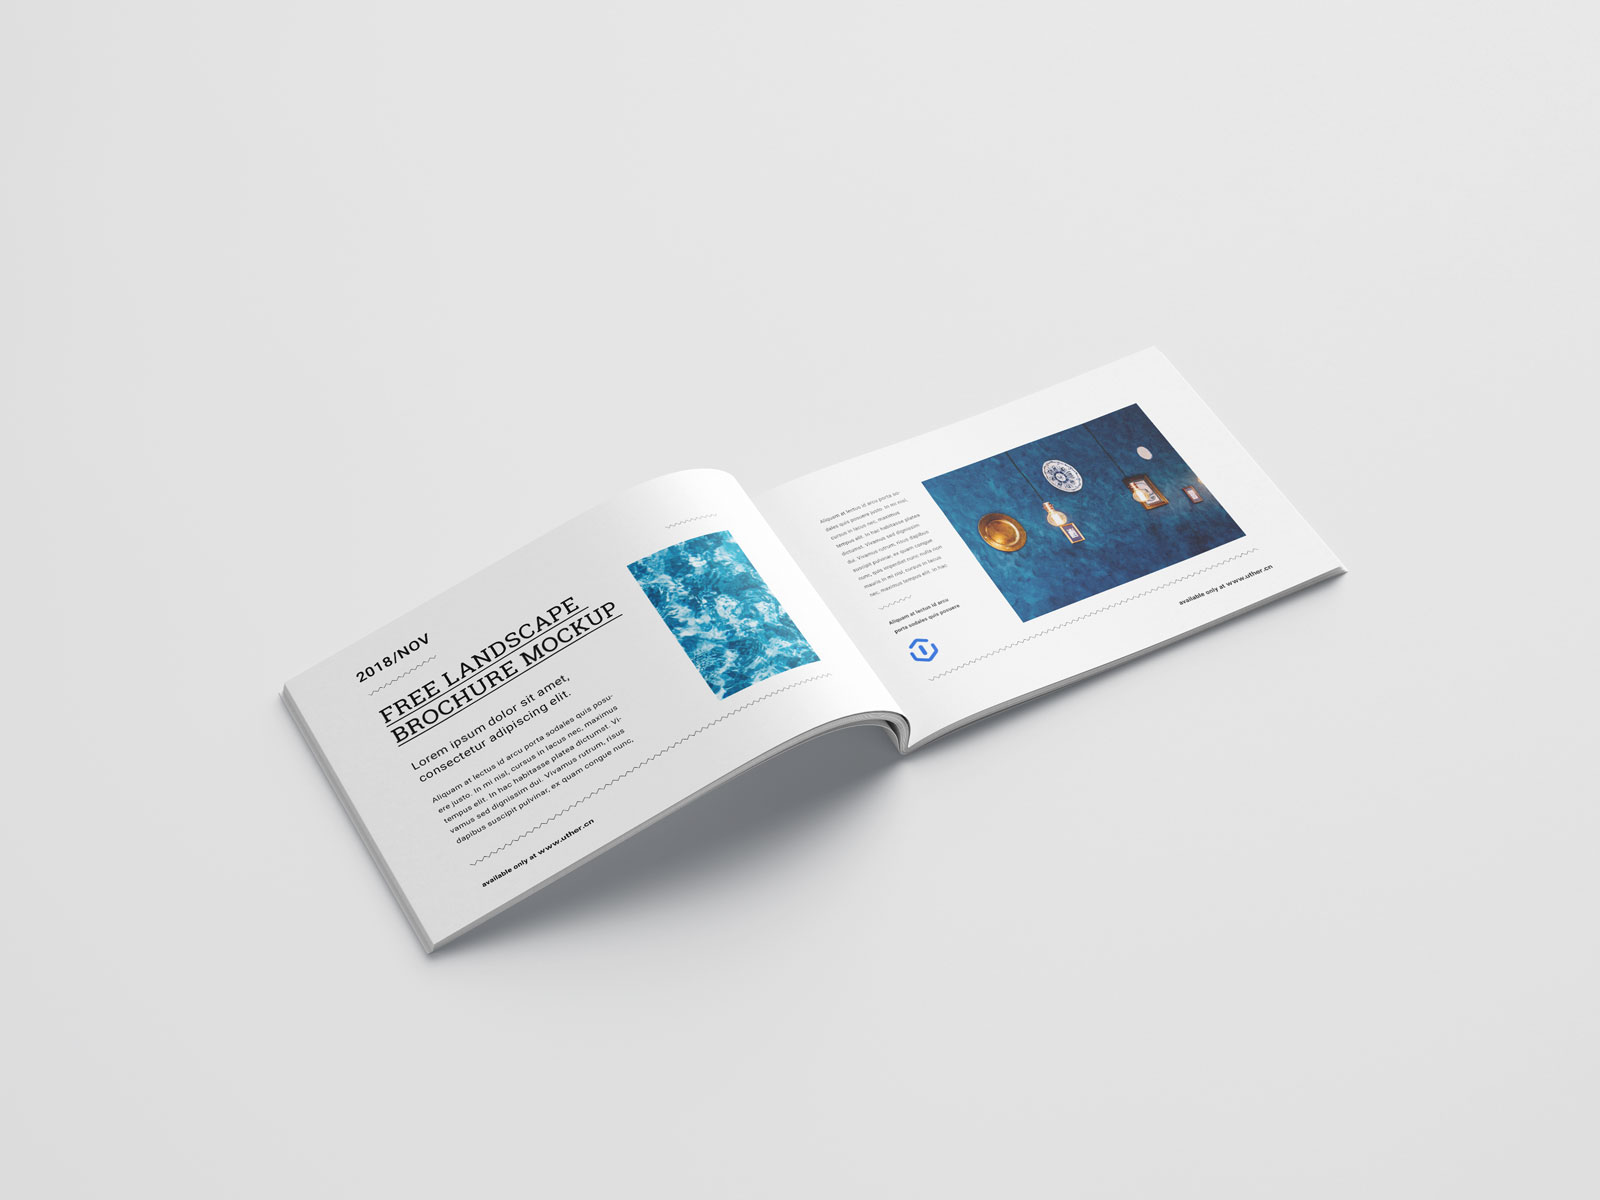 高端横向钉装宣传册画册手册设计内页展示PSD样机素材brochure mockup